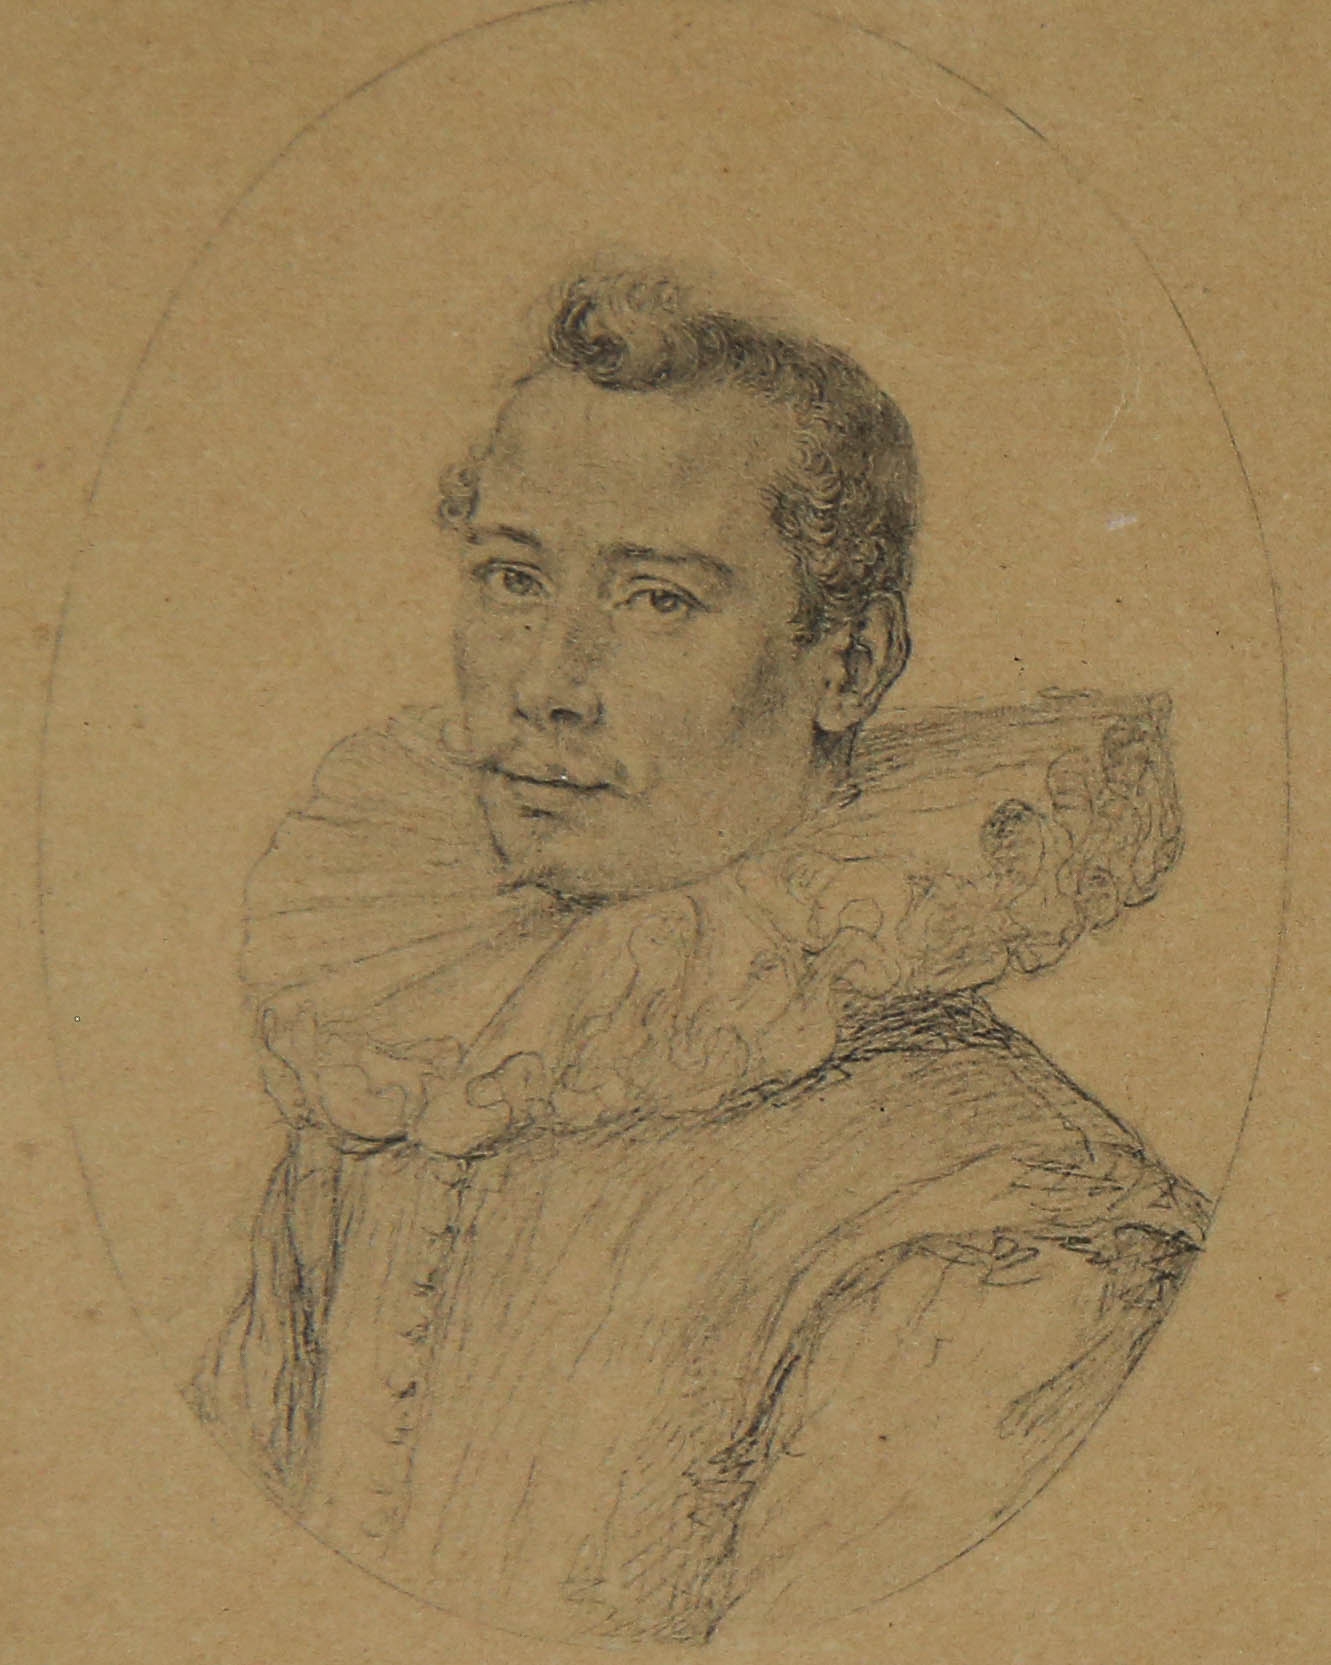 [Antique print, engraving] Portrait of Rutgaert Jansz/Portret van de dichter Rutgaert Jansz., published 1596.